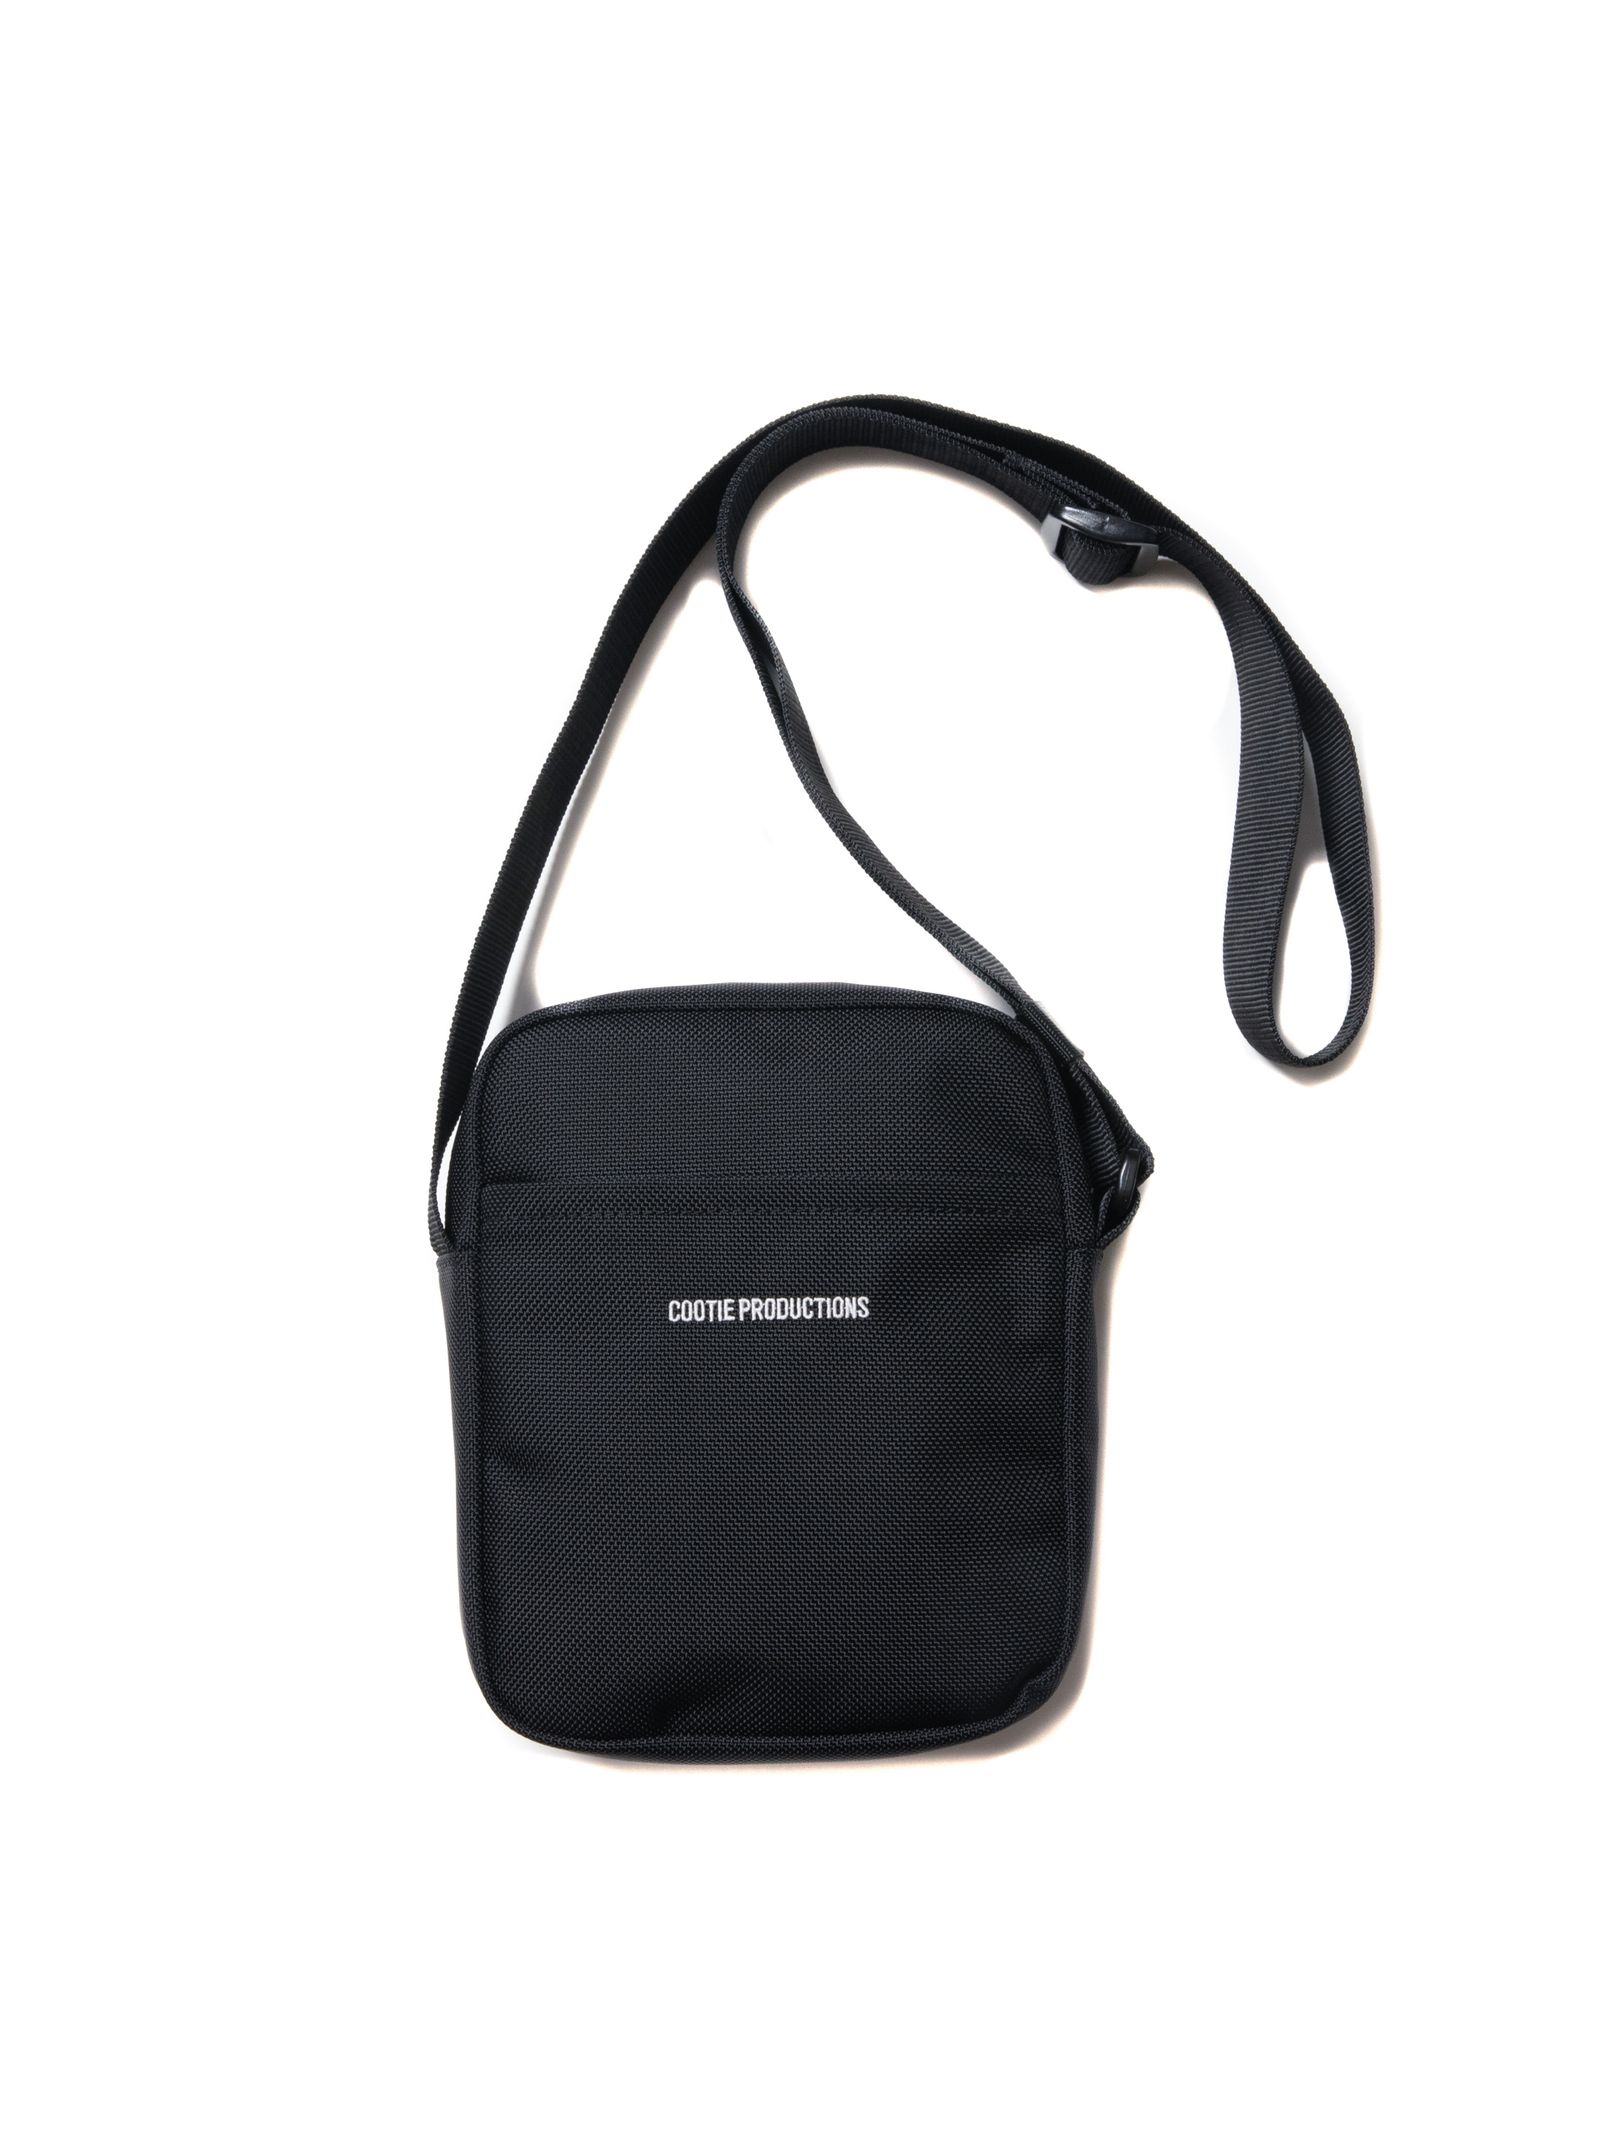 COOTIE PRODUCTIONS - Compact Shoulder Bag (BLACK